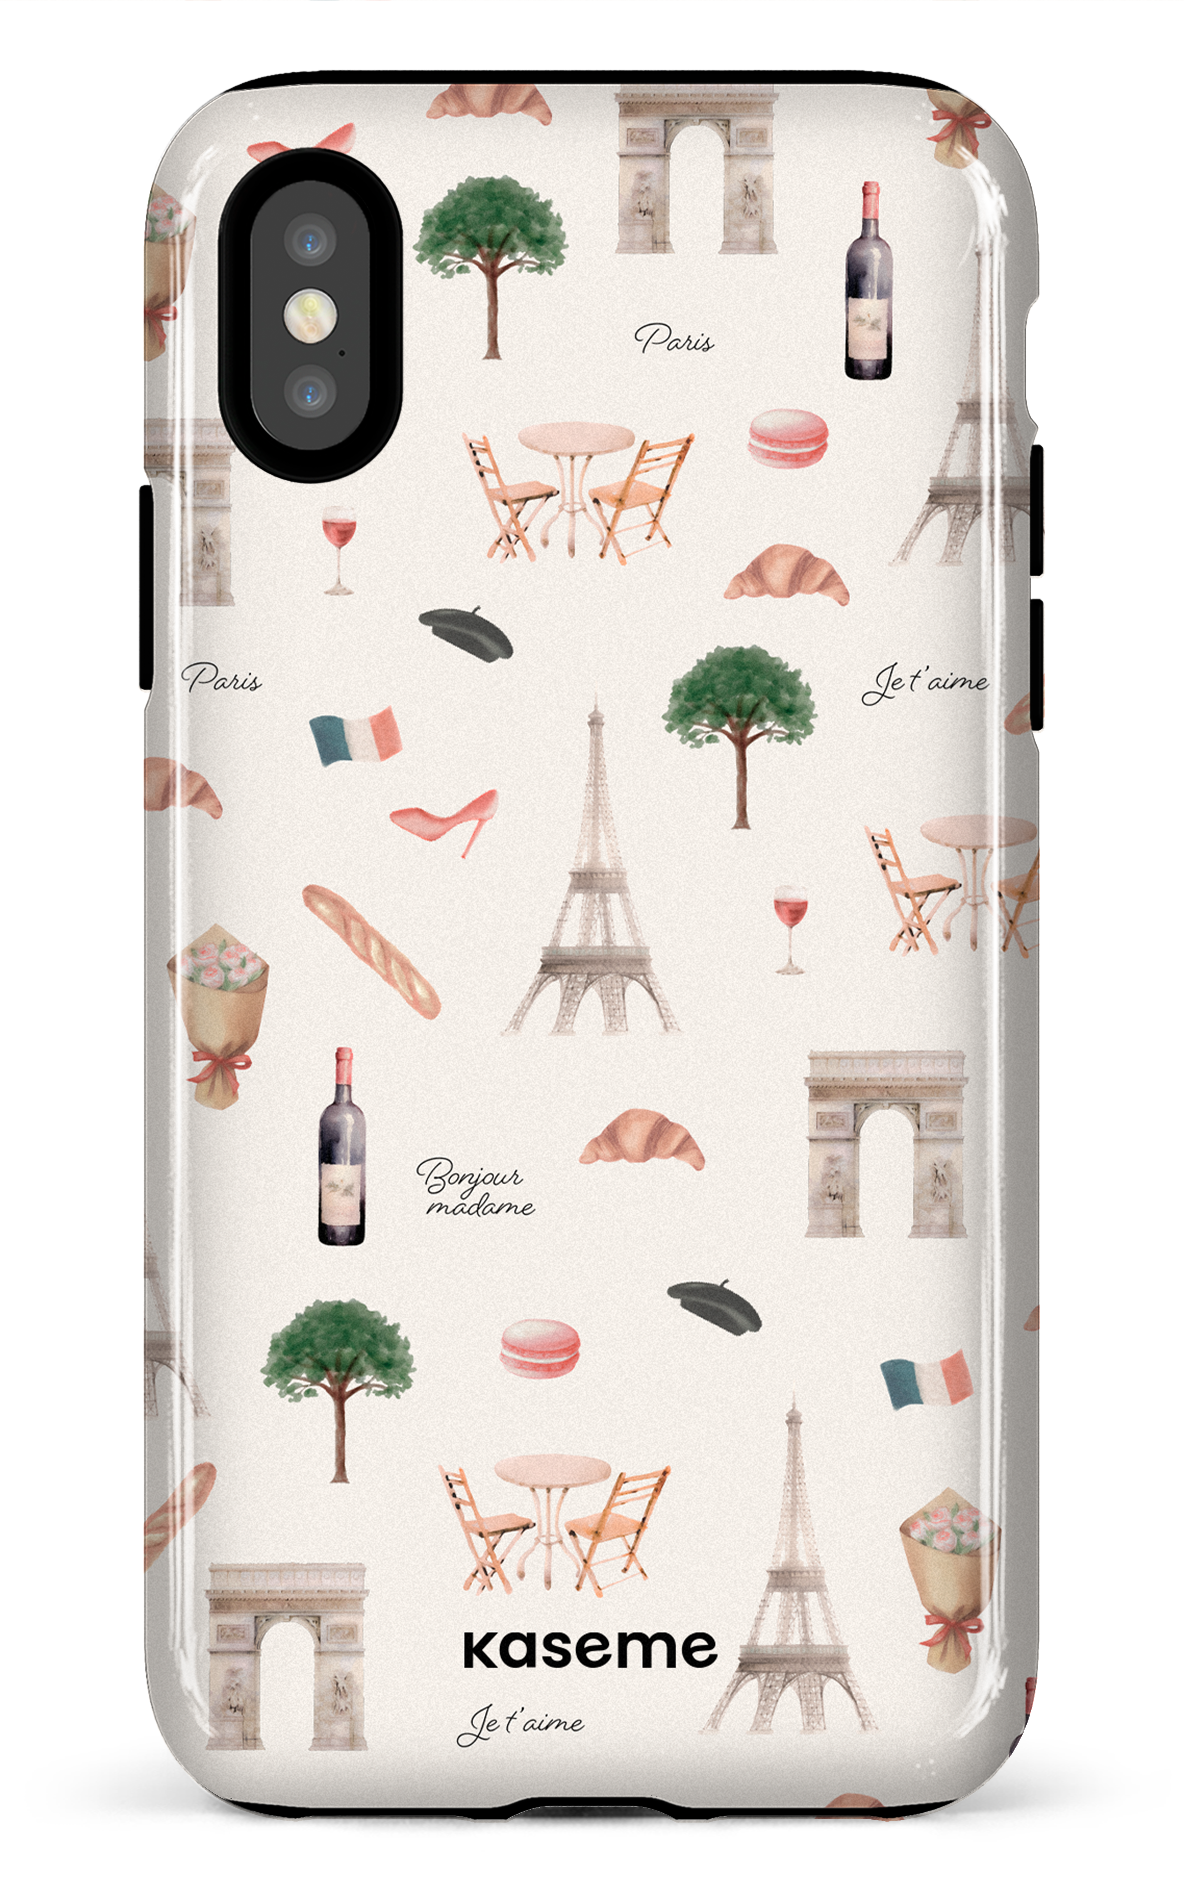 Je t'aime Paris - iPhone X/Xs